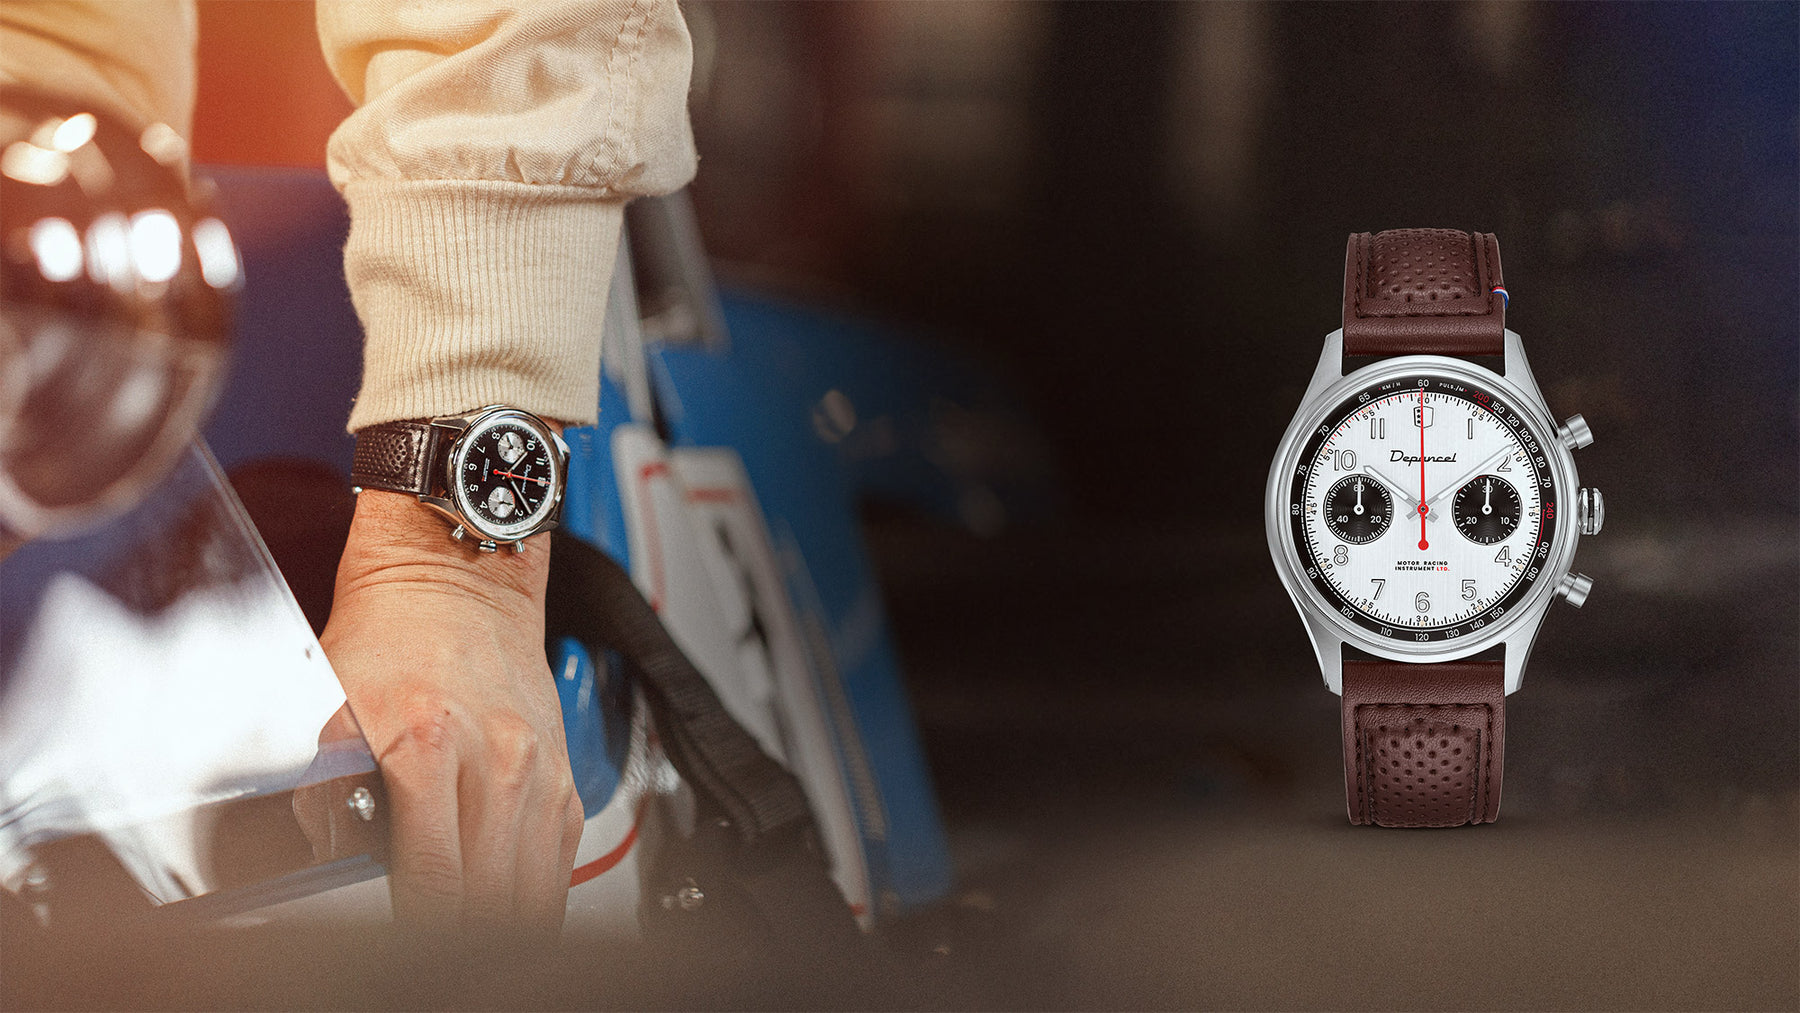 la montre Depancel Allure legend 60s panda à droite d'un pilote de course automobile qui rentre dans sa formule 1 avec la montre au poignet